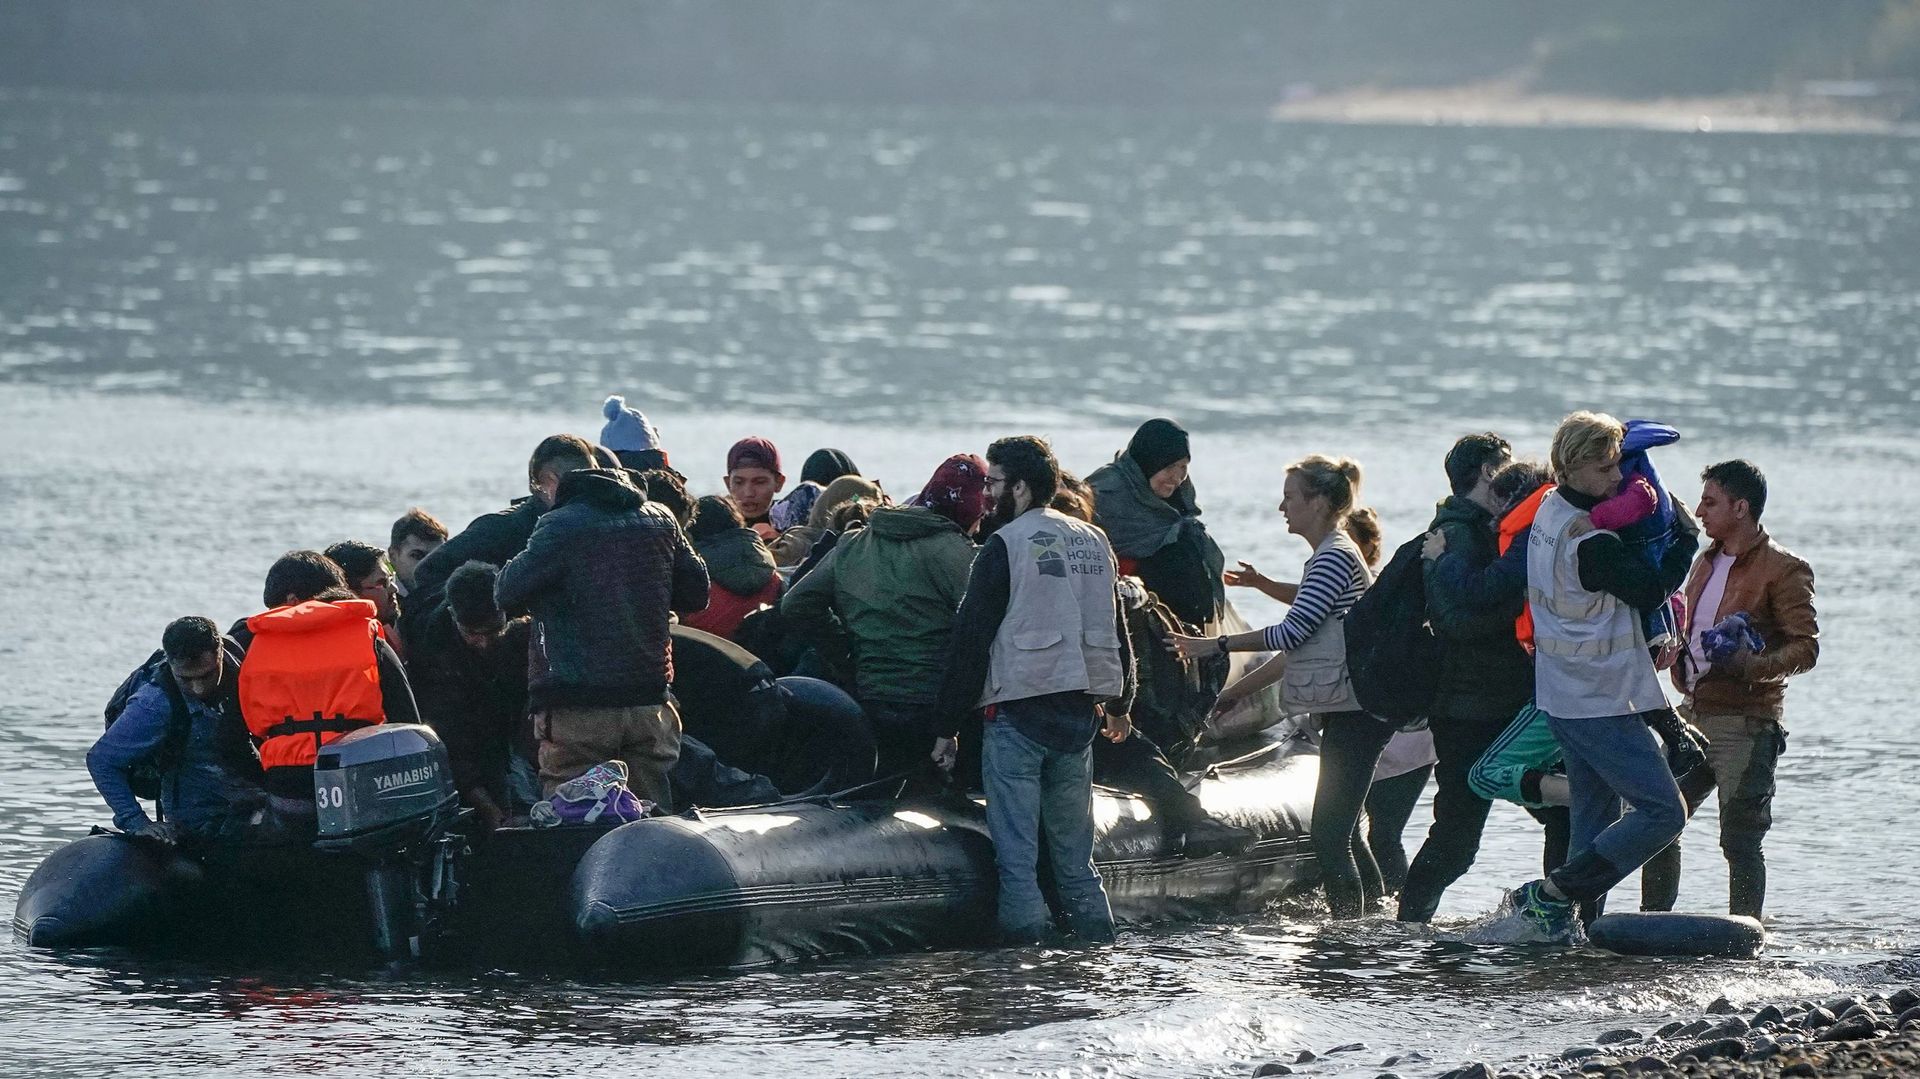 Depuis l'ouverturedes frontières par Ankara, les migrnas continuent à arriver à Lesbos alors que plus de 38.000 migrants s’entassent déjà dans les camps des îles de Lesbos, Samos, Chios, Leros et Kos, 